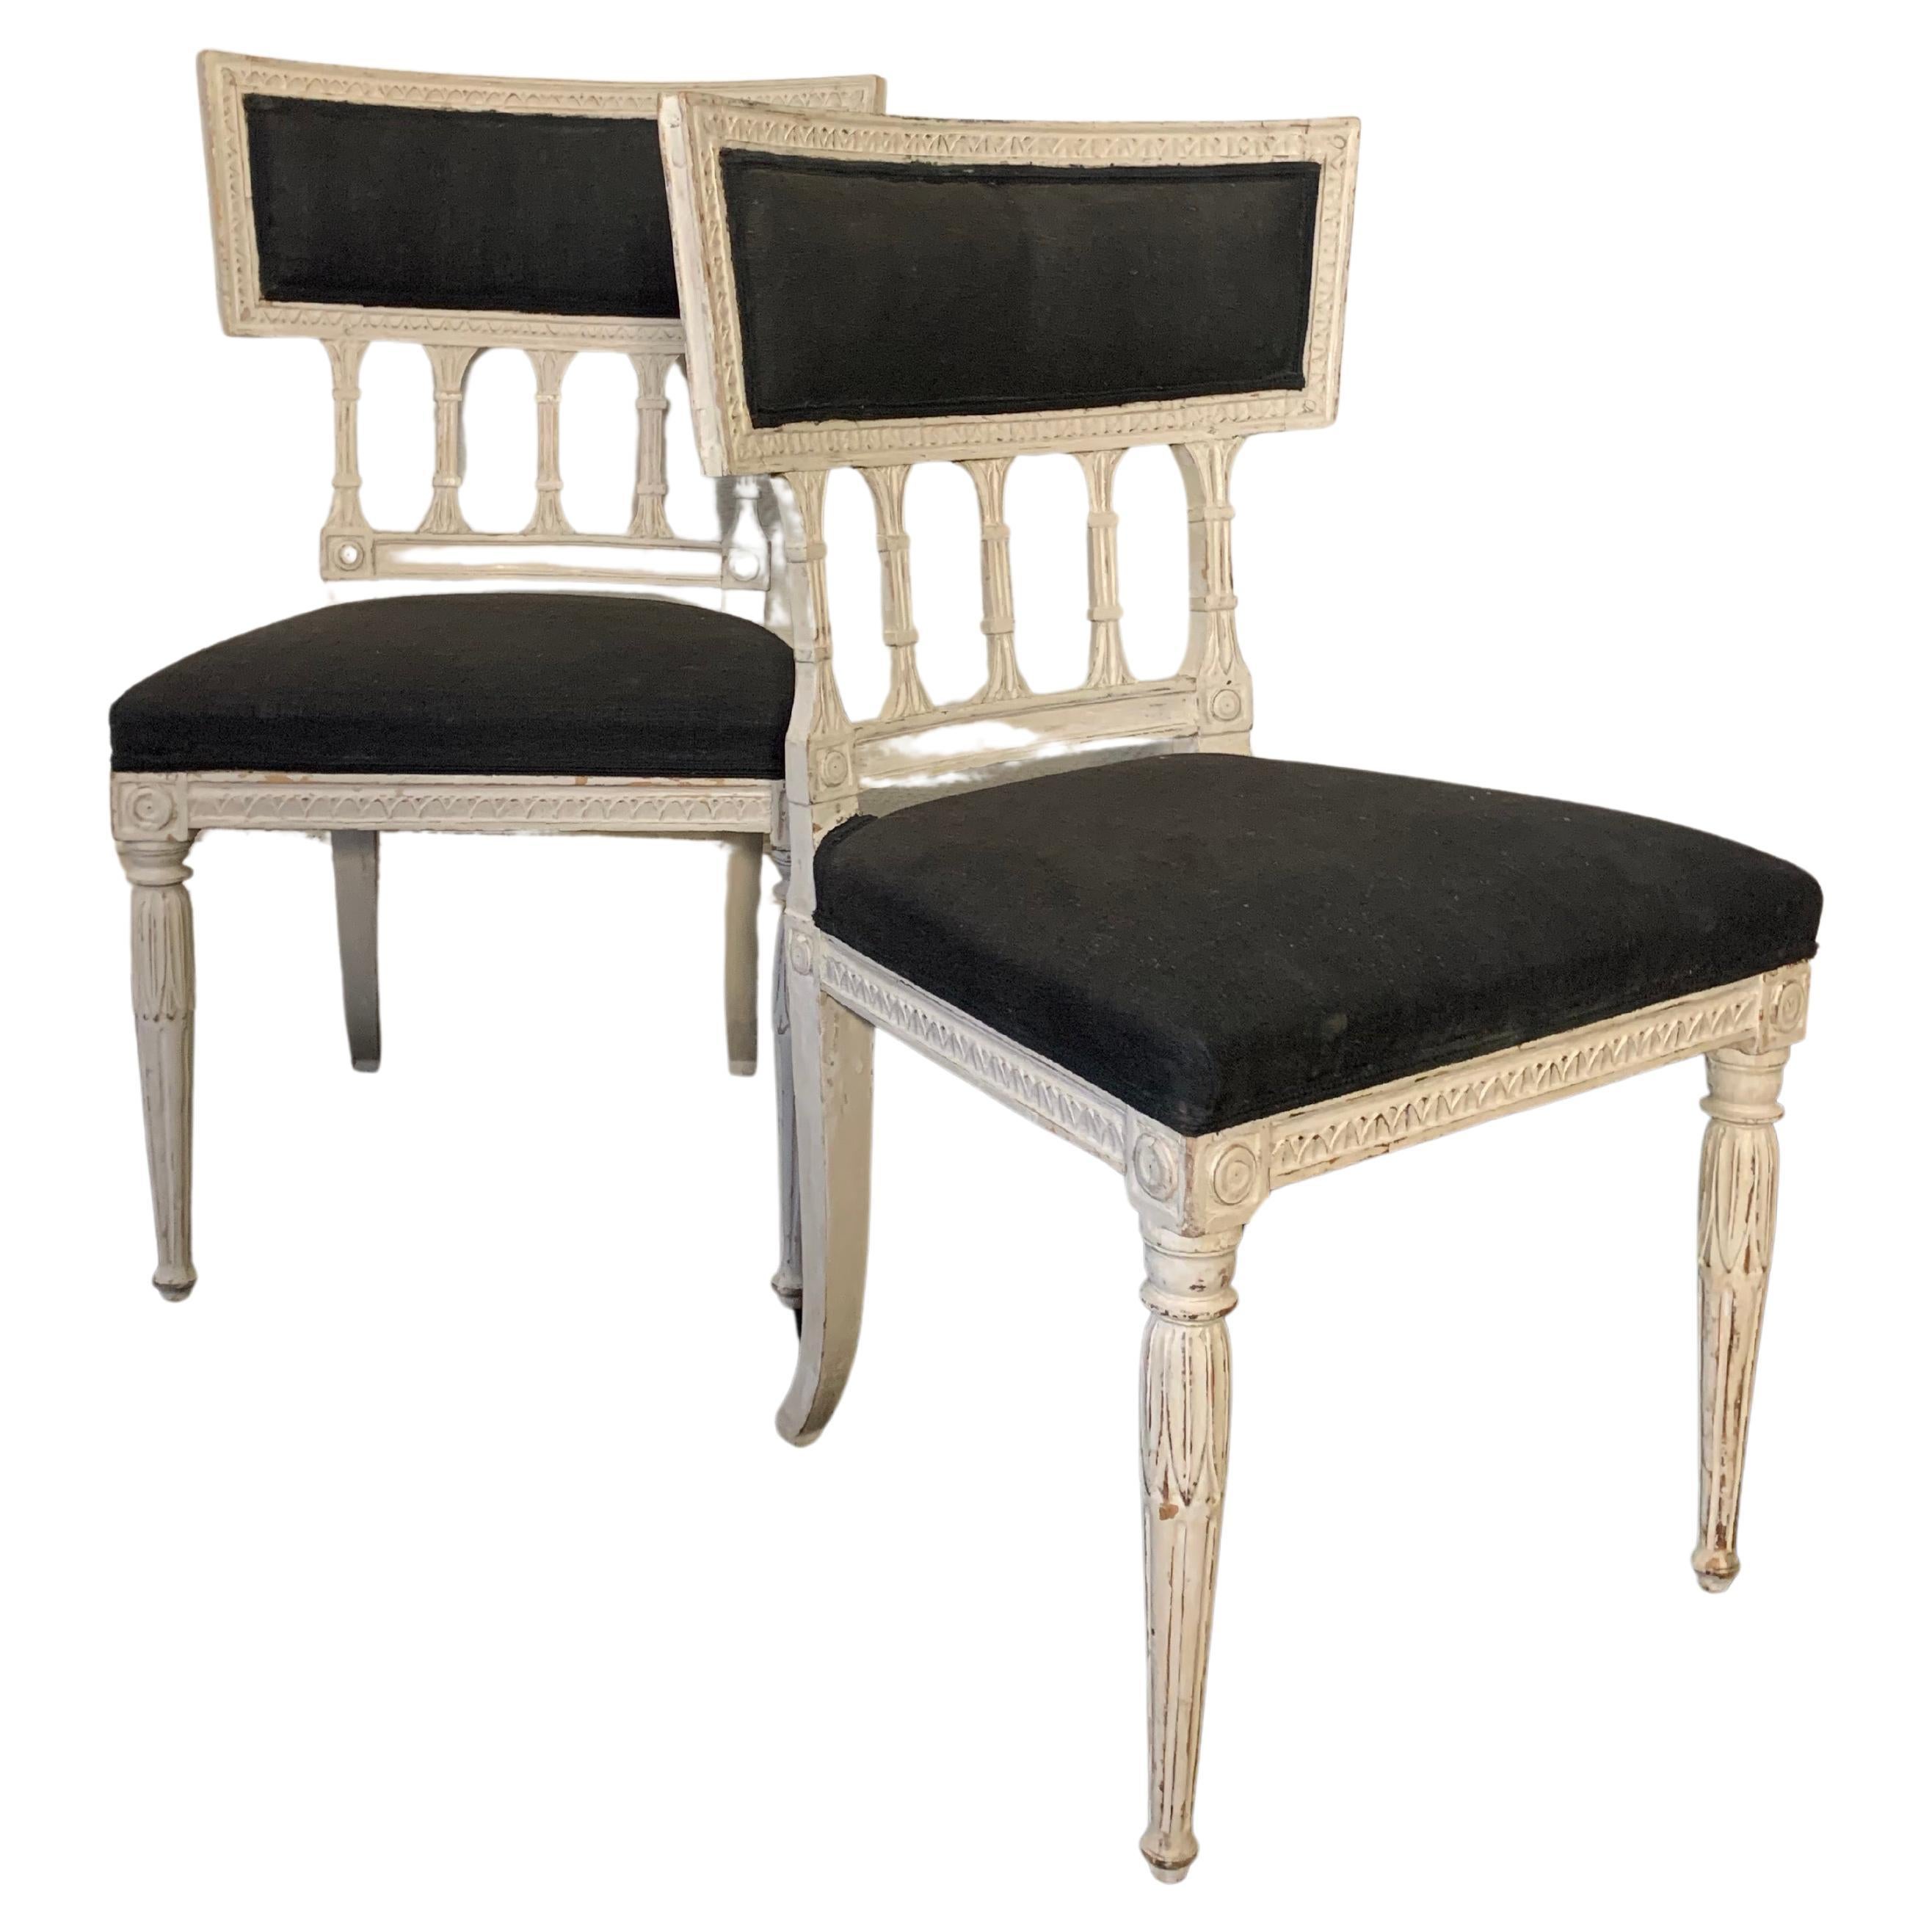 6 gleiche Stühle, frühes 19. Jahrhundert, spätes Gustavianisch, hergestellt von Ephraim Sthal